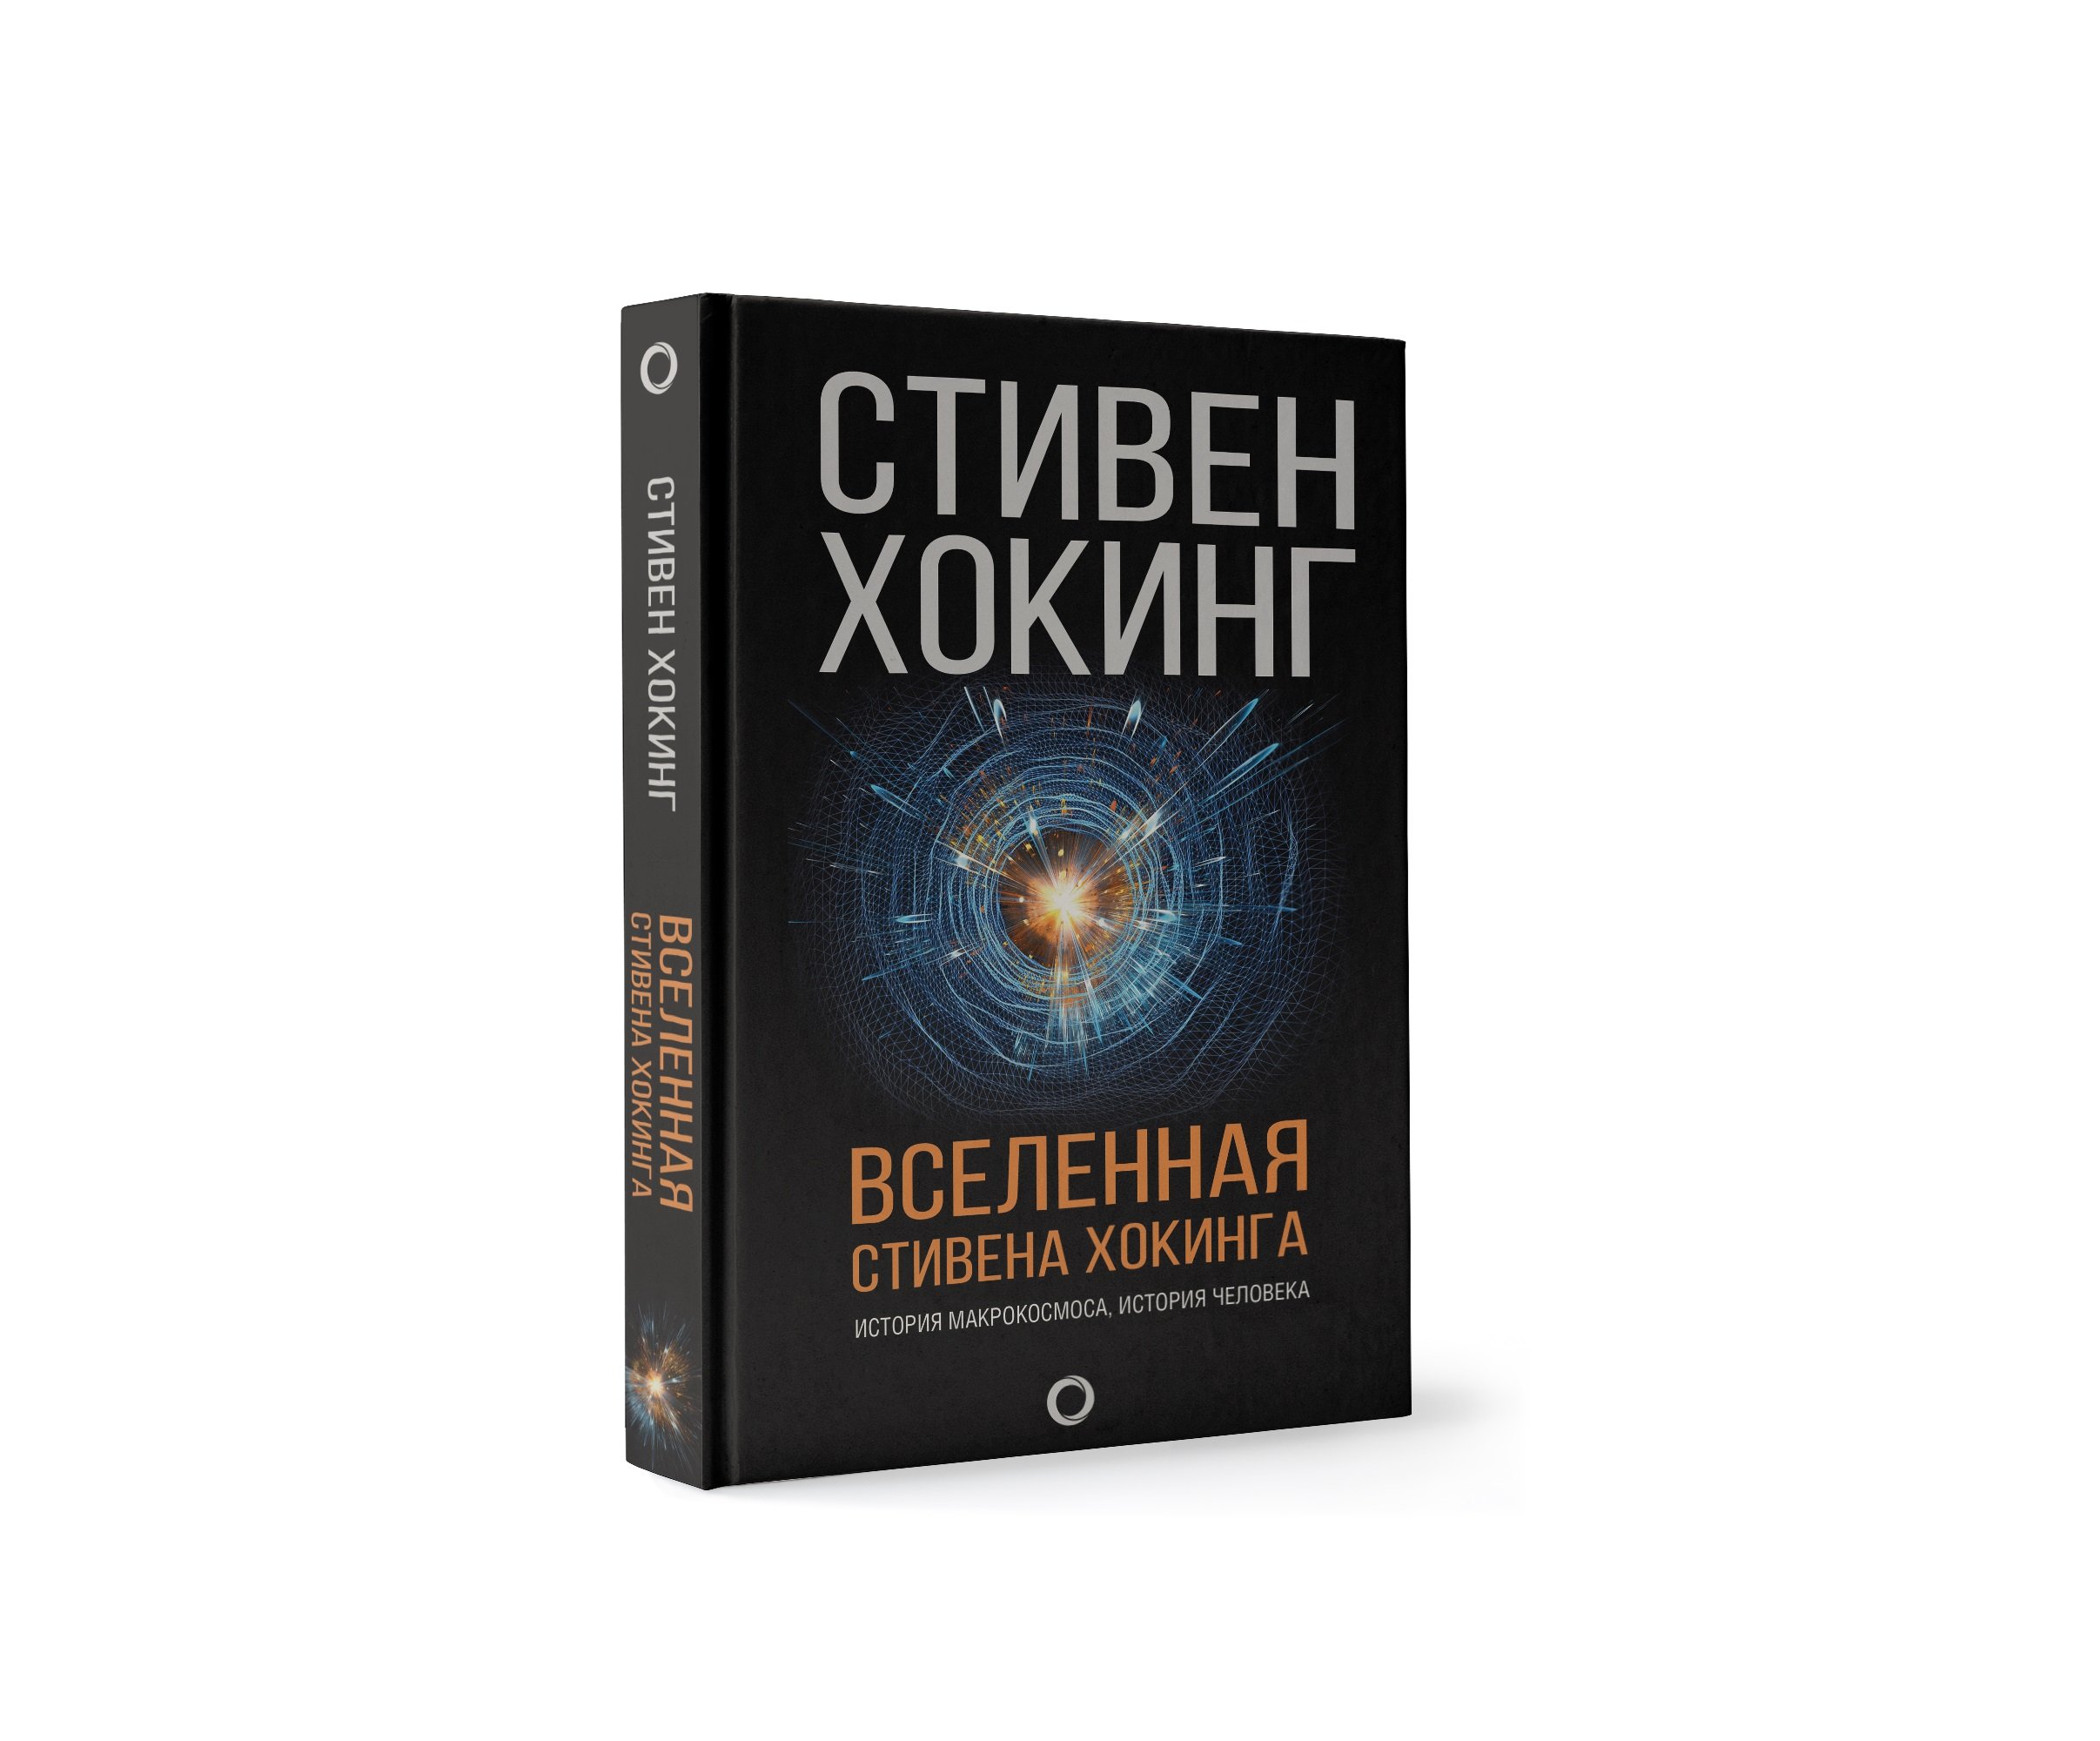 Zakazat.ru: Вселенная Стивена Хокинга. Хокинг Стивен